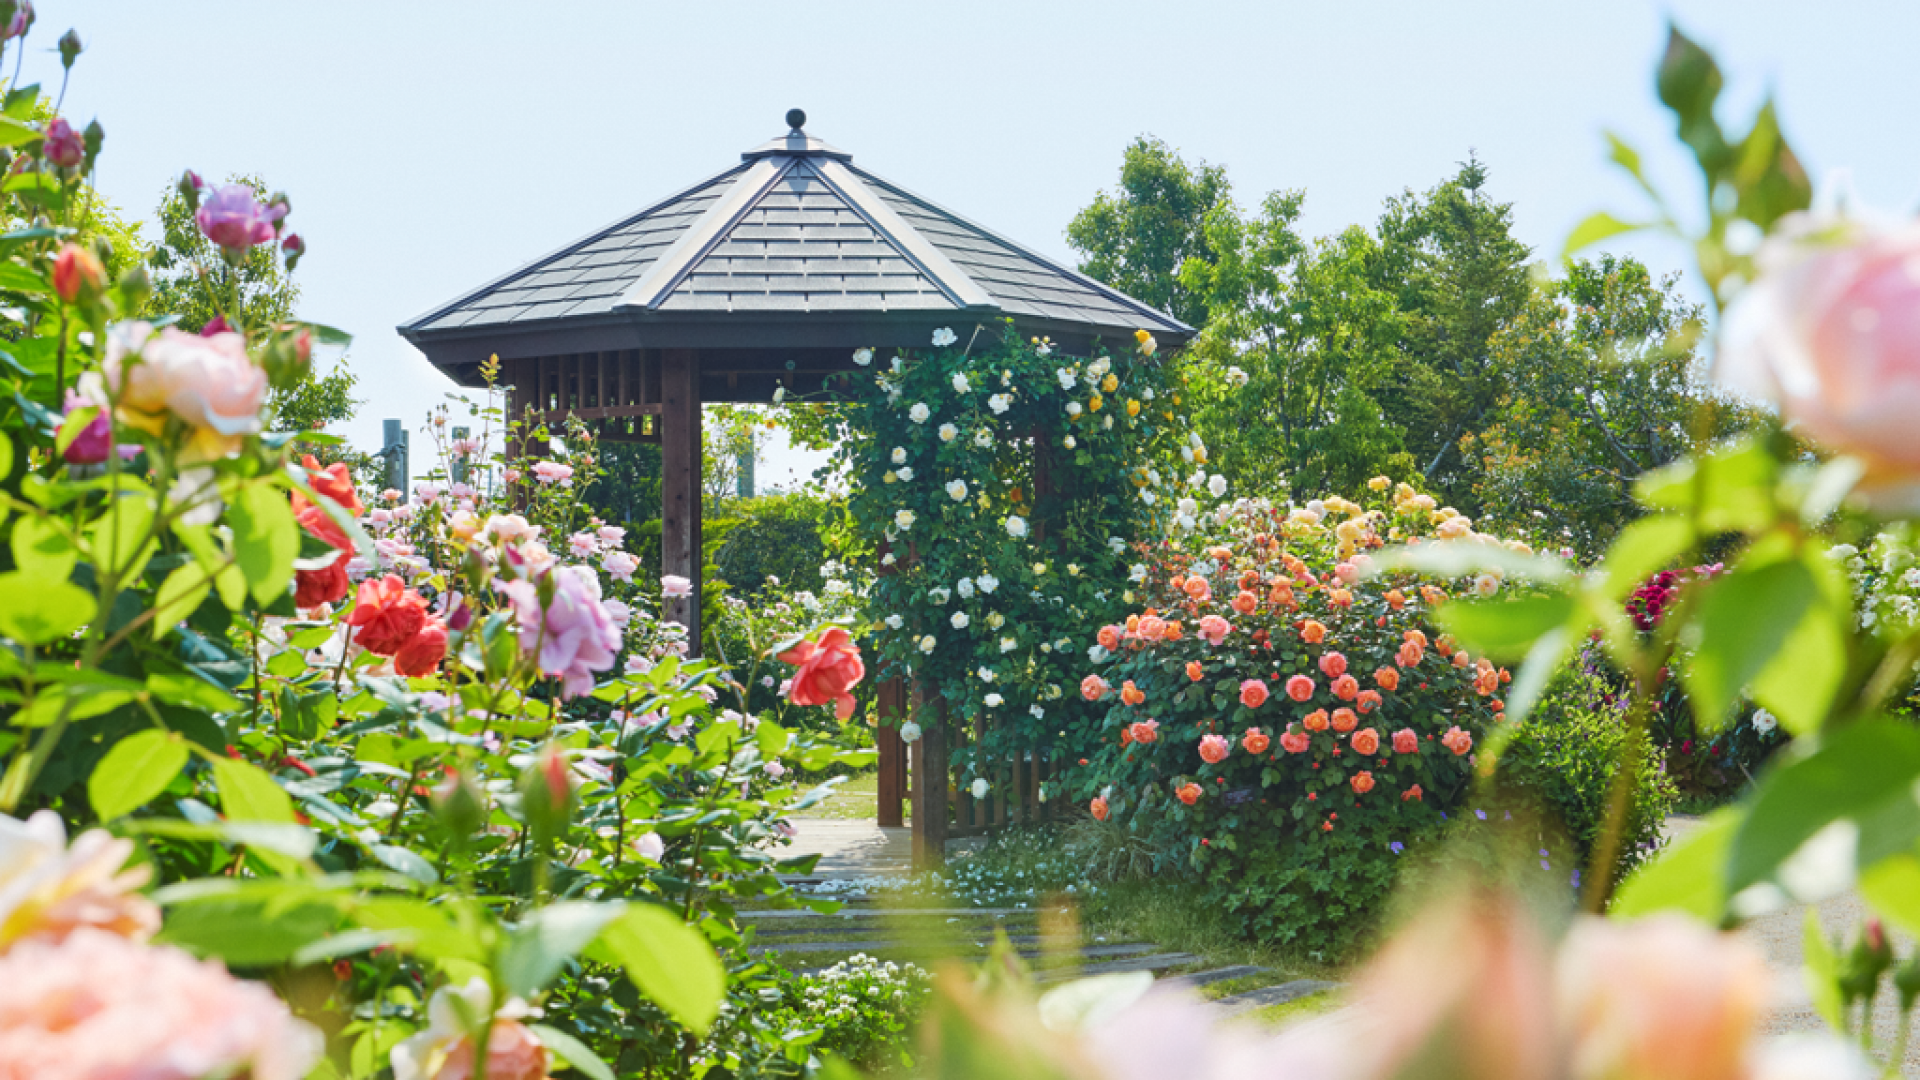 Präfekturzentrum für Blumen und Grünanlagen in Kanagawa, Kana Garten (Gemüse und Blumen)